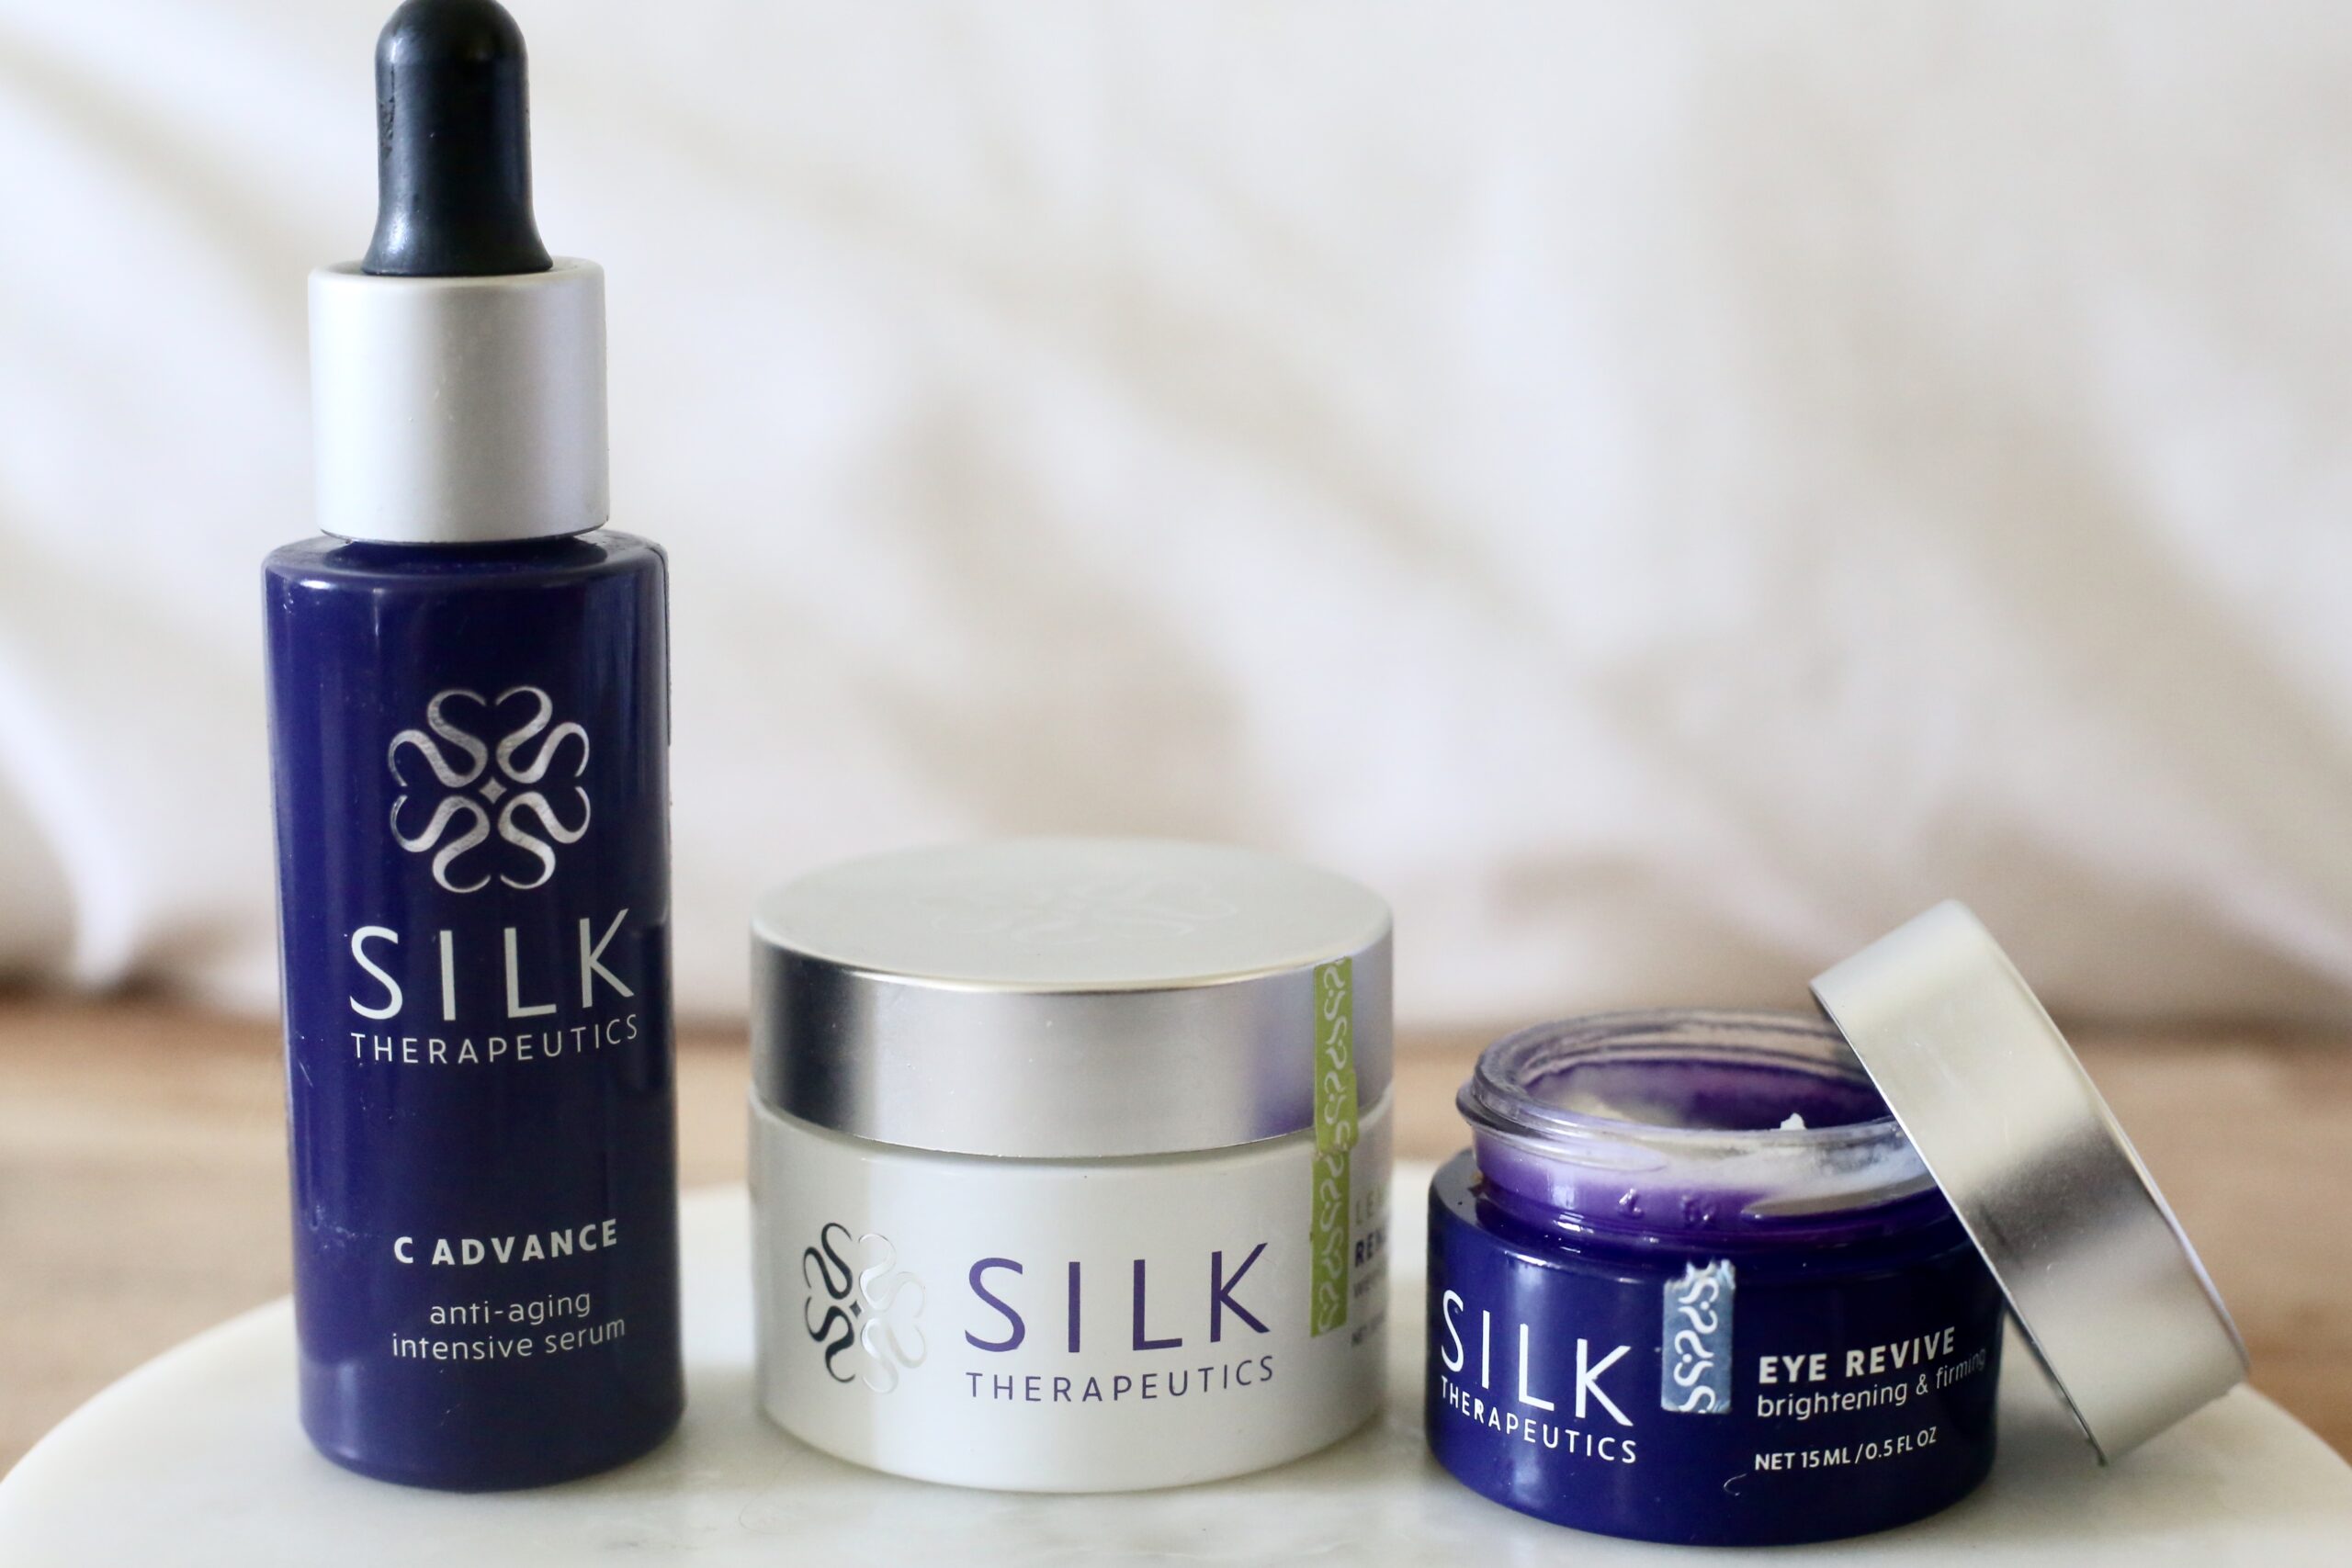 Silk therapeutics